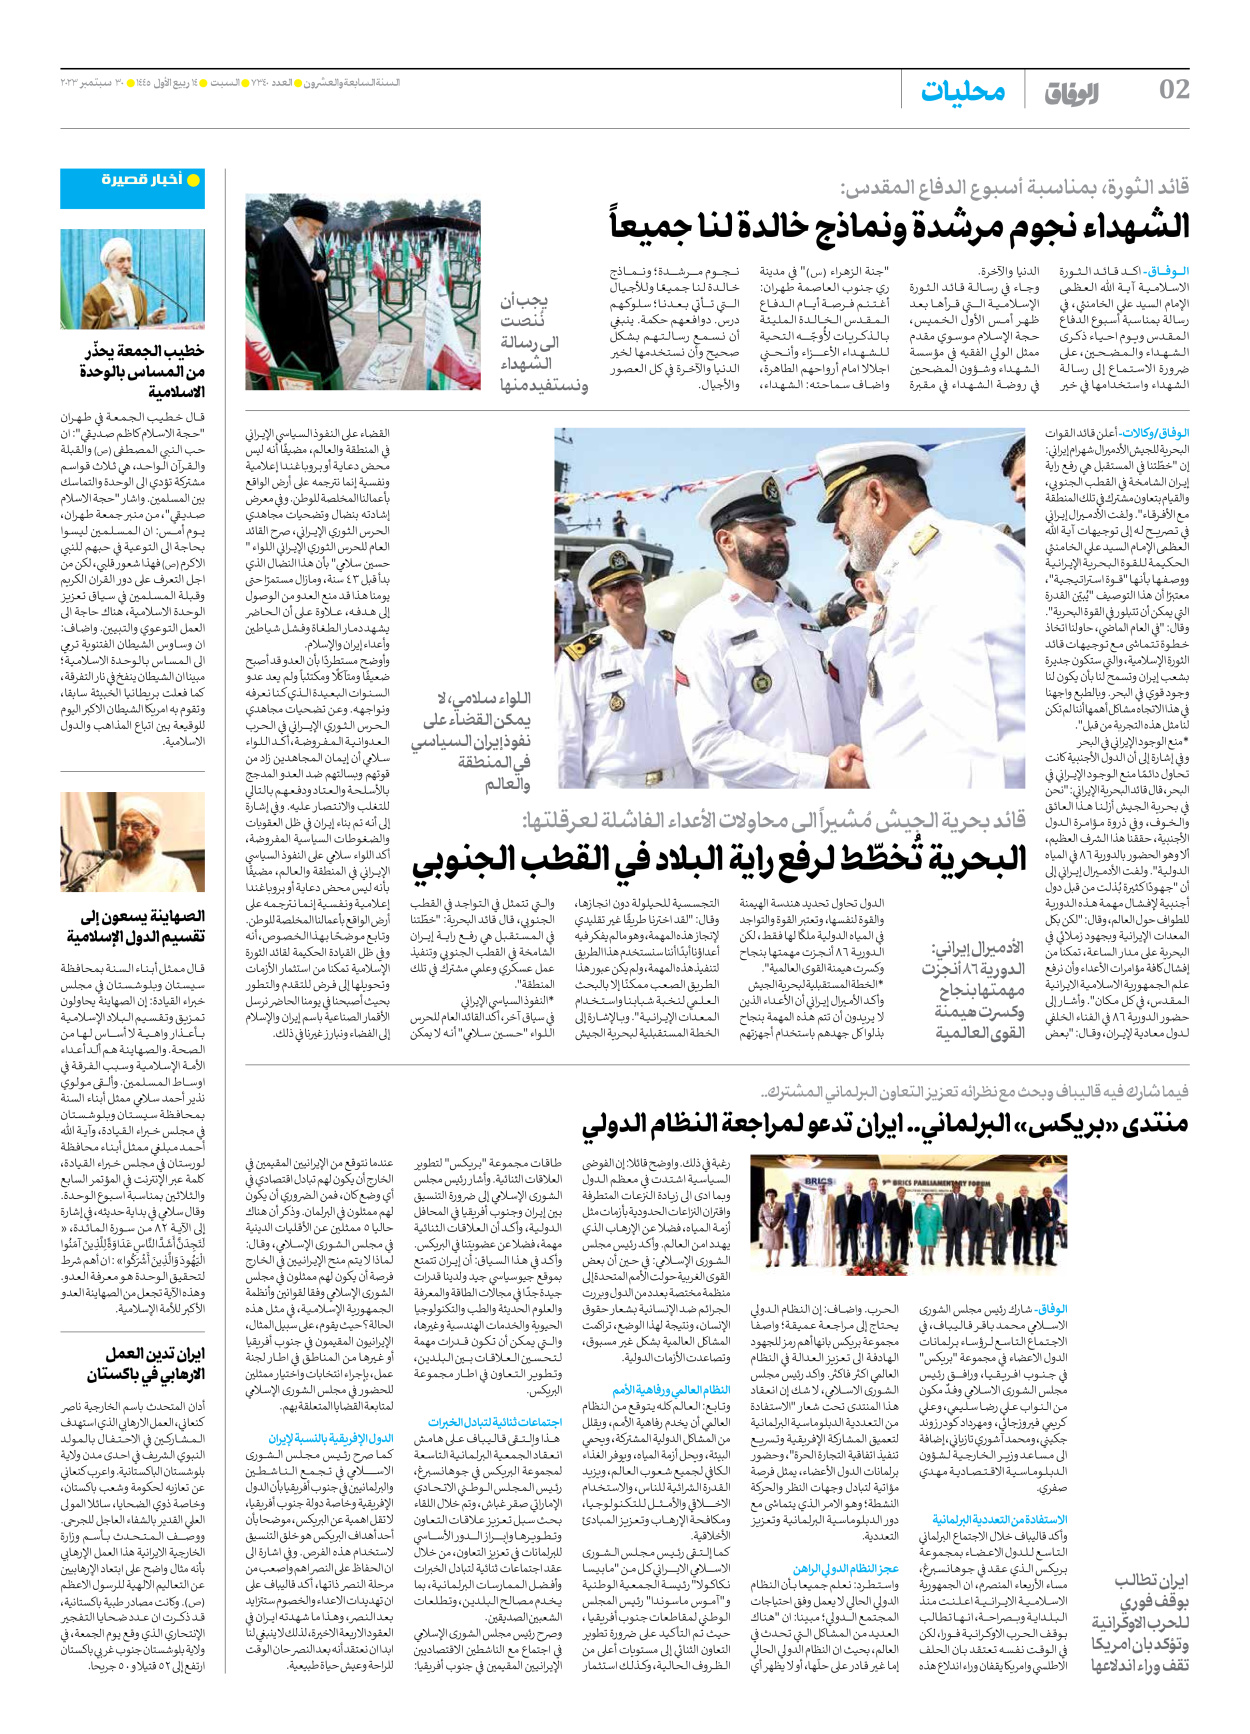 صحیفة ایران الدولیة الوفاق - العدد سبعة آلاف وثلاثمائة وأربعون - ٣٠ سبتمبر ٢٠٢٣ - الصفحة ۲